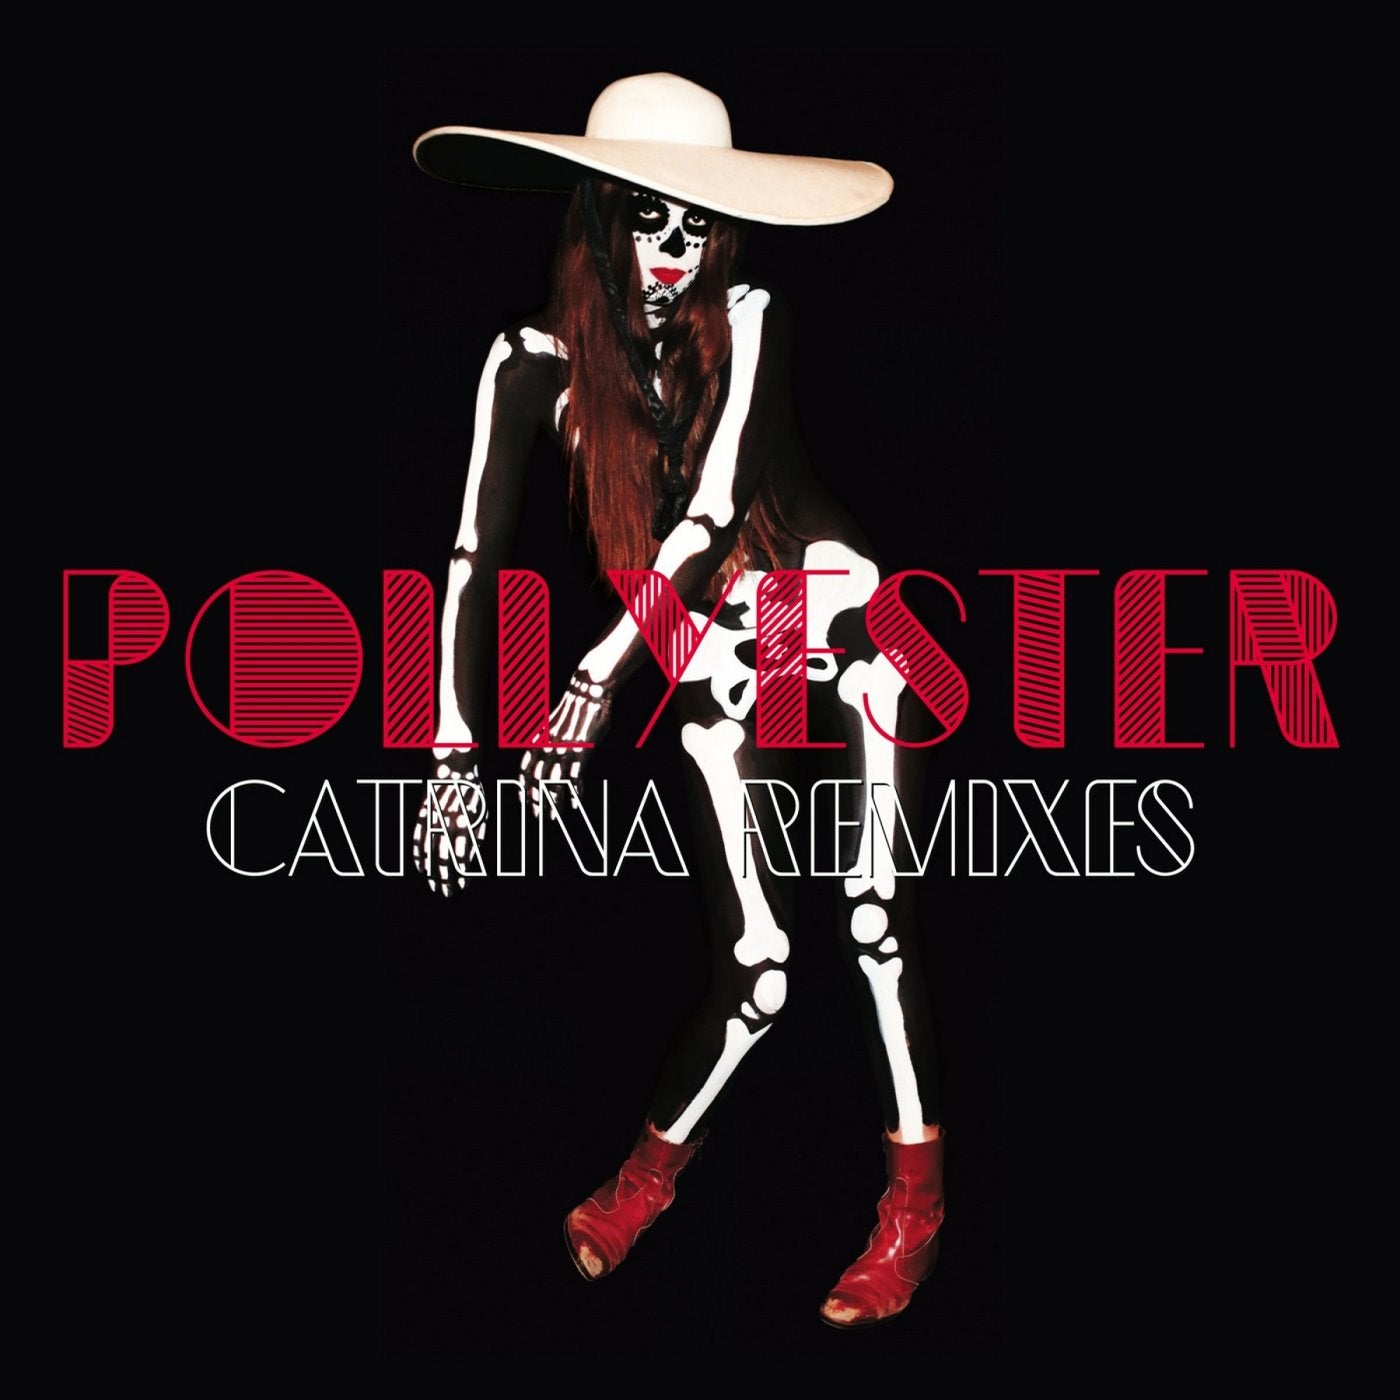 Catrina (Remixes)